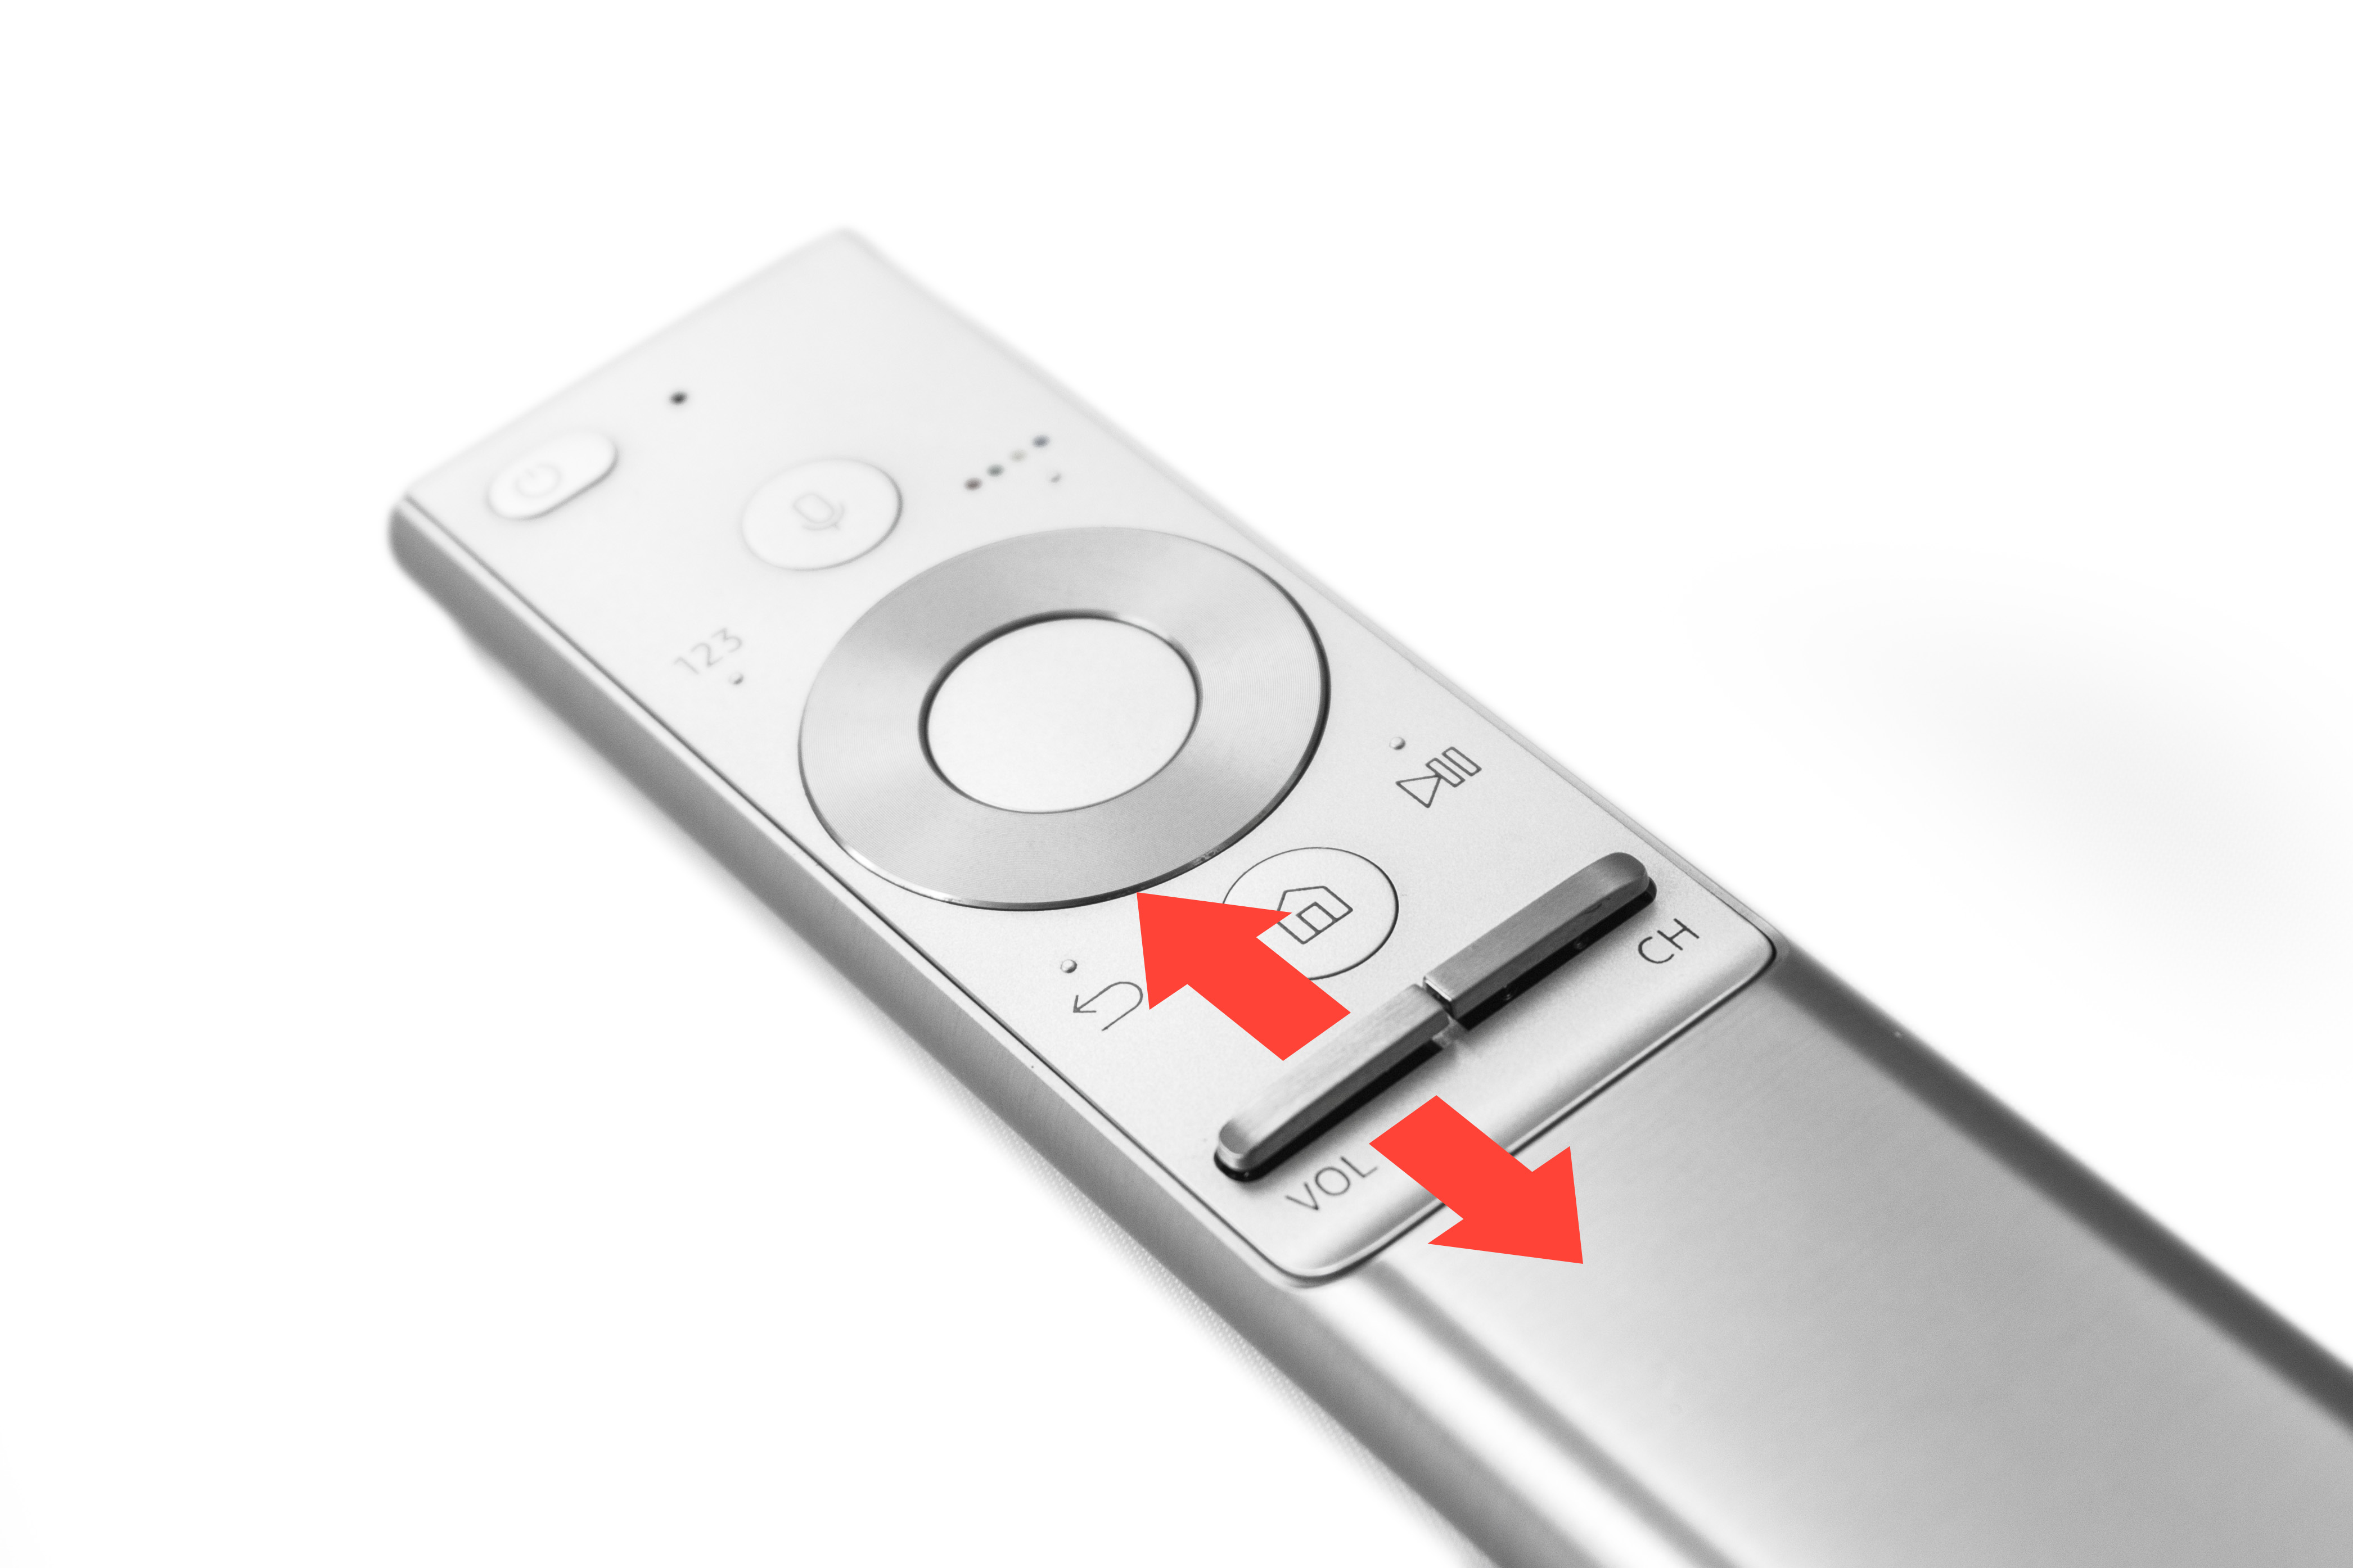 Consulta Personalmente Prescripción QLED TV Q7F) ¿Cómo subir y bajar volumen con el mando? | Samsung España